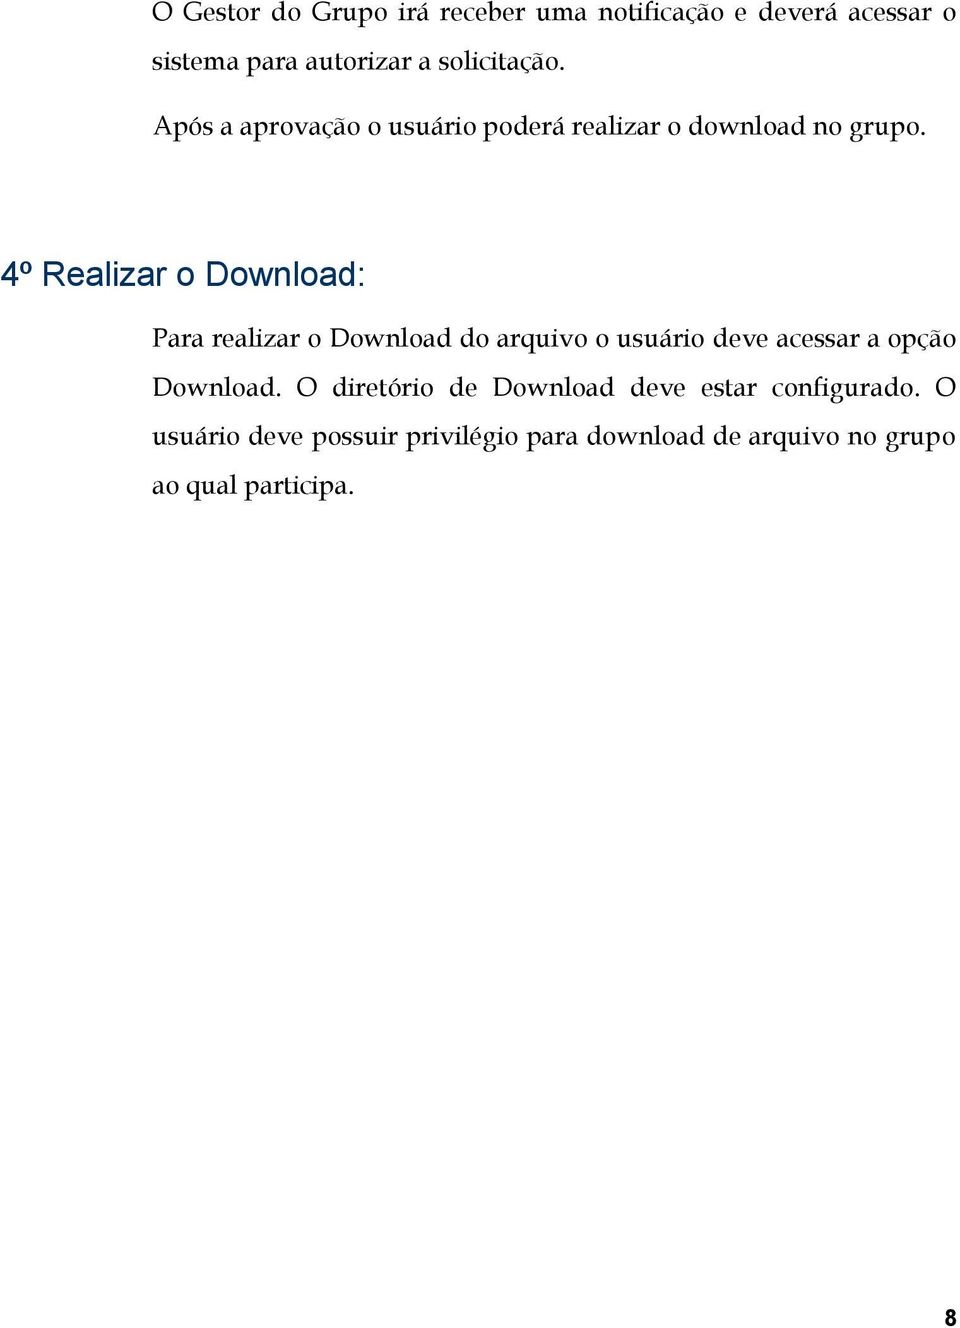 4º Realizar o Download: Para realizar o Download do arquivo o usuário deve acessar a opção Download.